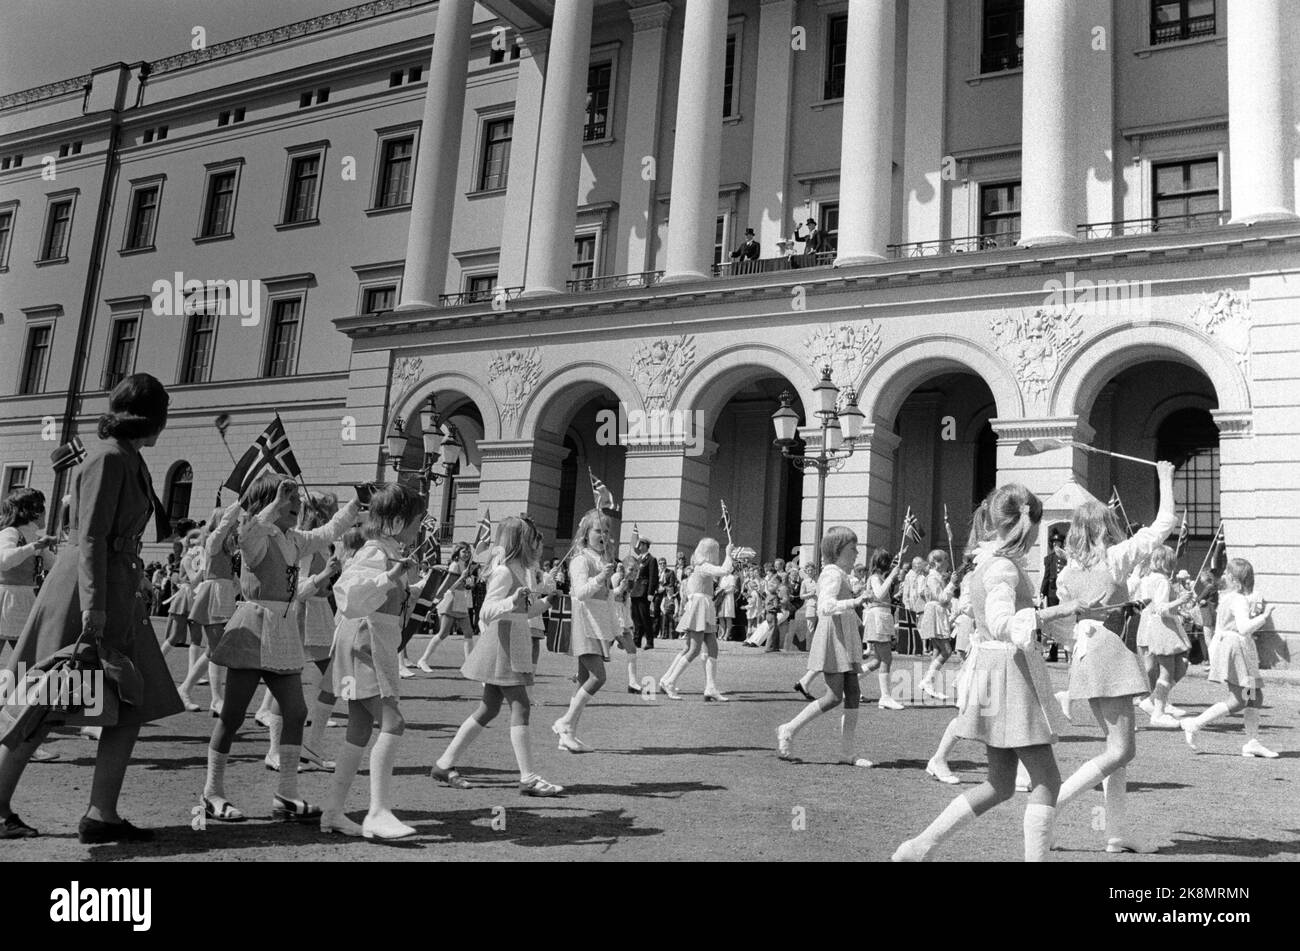 Oslo, 17. Mai 1975. Der Kinderzug in der Hauptstadt fuhr unter den besten vorstellbaren Wetterbedingungen mit herrlicher Sonne und Sommerhitze. Es gab eine tolle Atmosphäre und glückliche Kinder, die die königliche Familie auf dem Schlossbalkon begrüßten. Foto: Henrik Laurvik / NTB Stockfoto